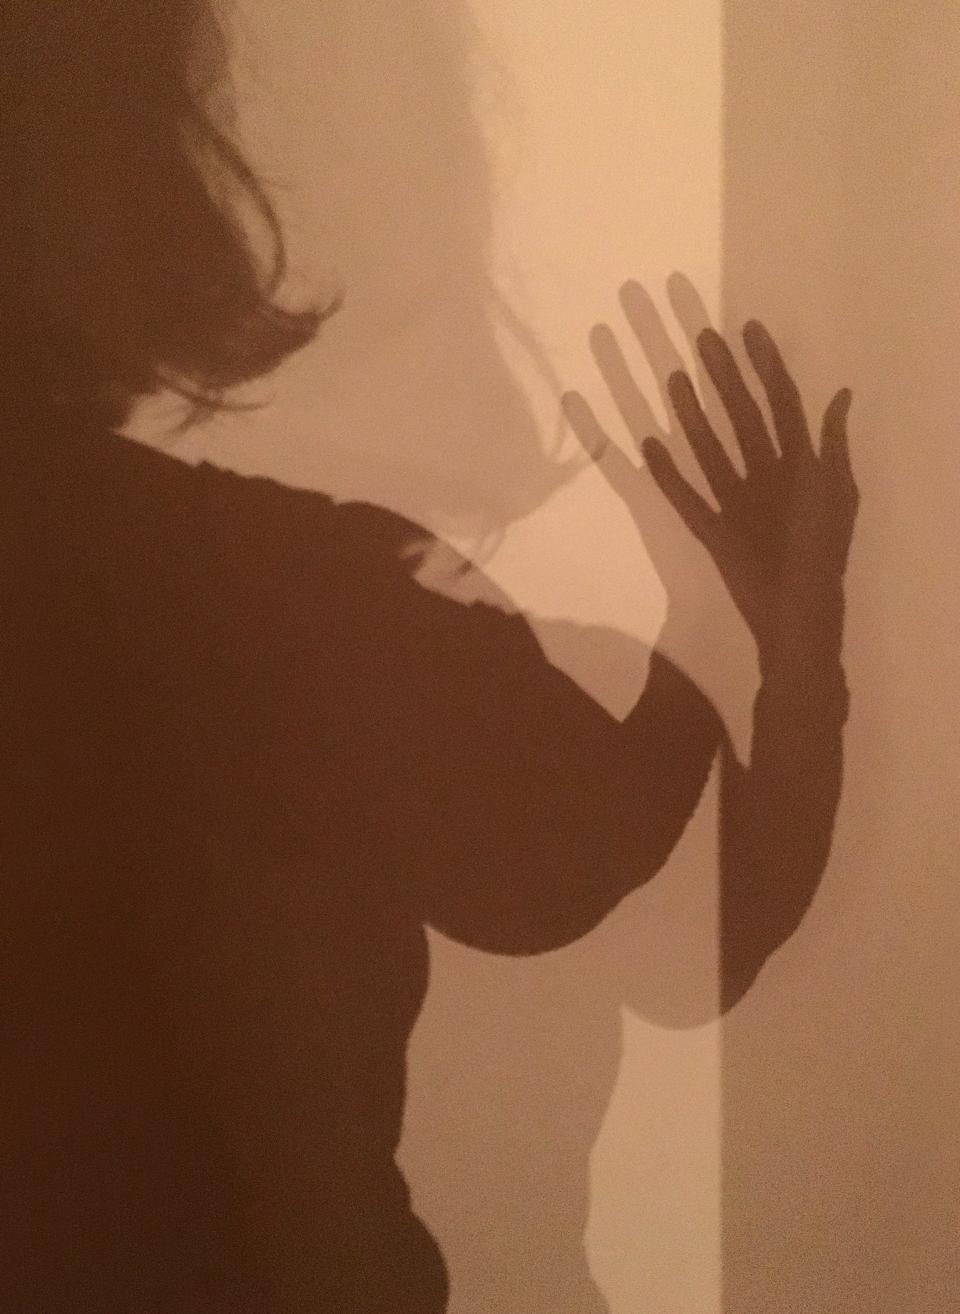 Ellen Mertins' version of a selfie, which captured her shadows.